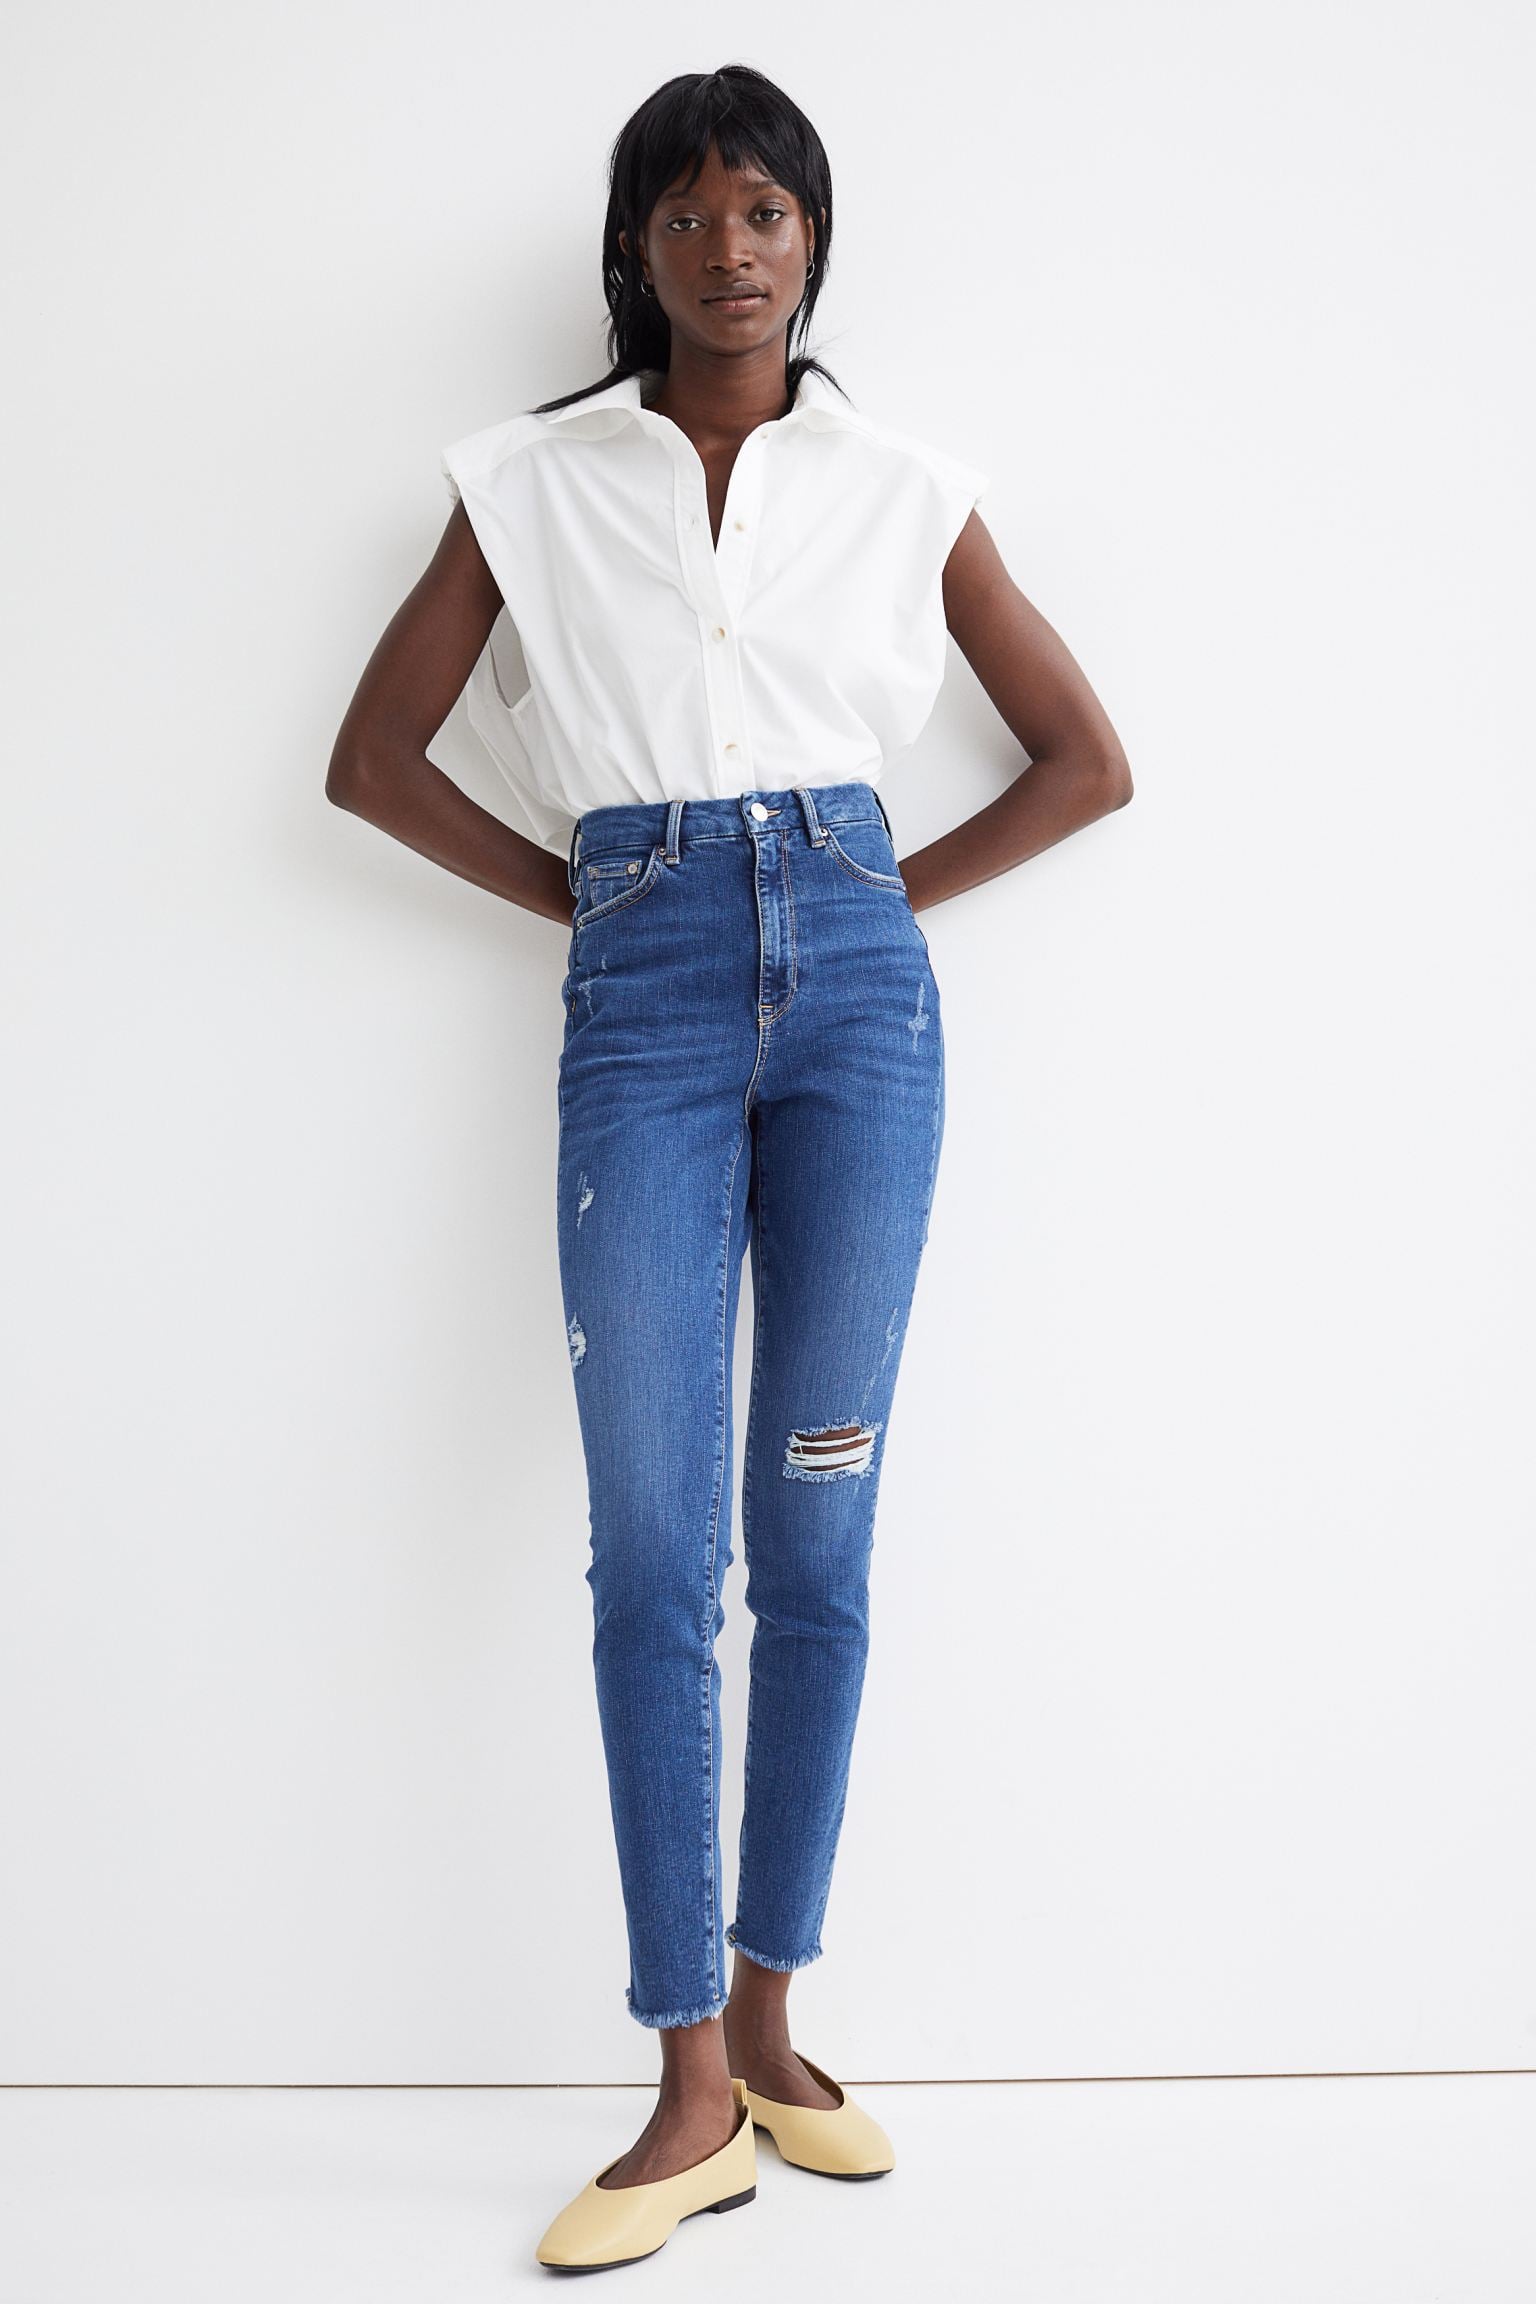 ik ben slaperig Oranje Gevoelig voor The Best H&M Jeans Under $50 | POPSUGAR Fashion